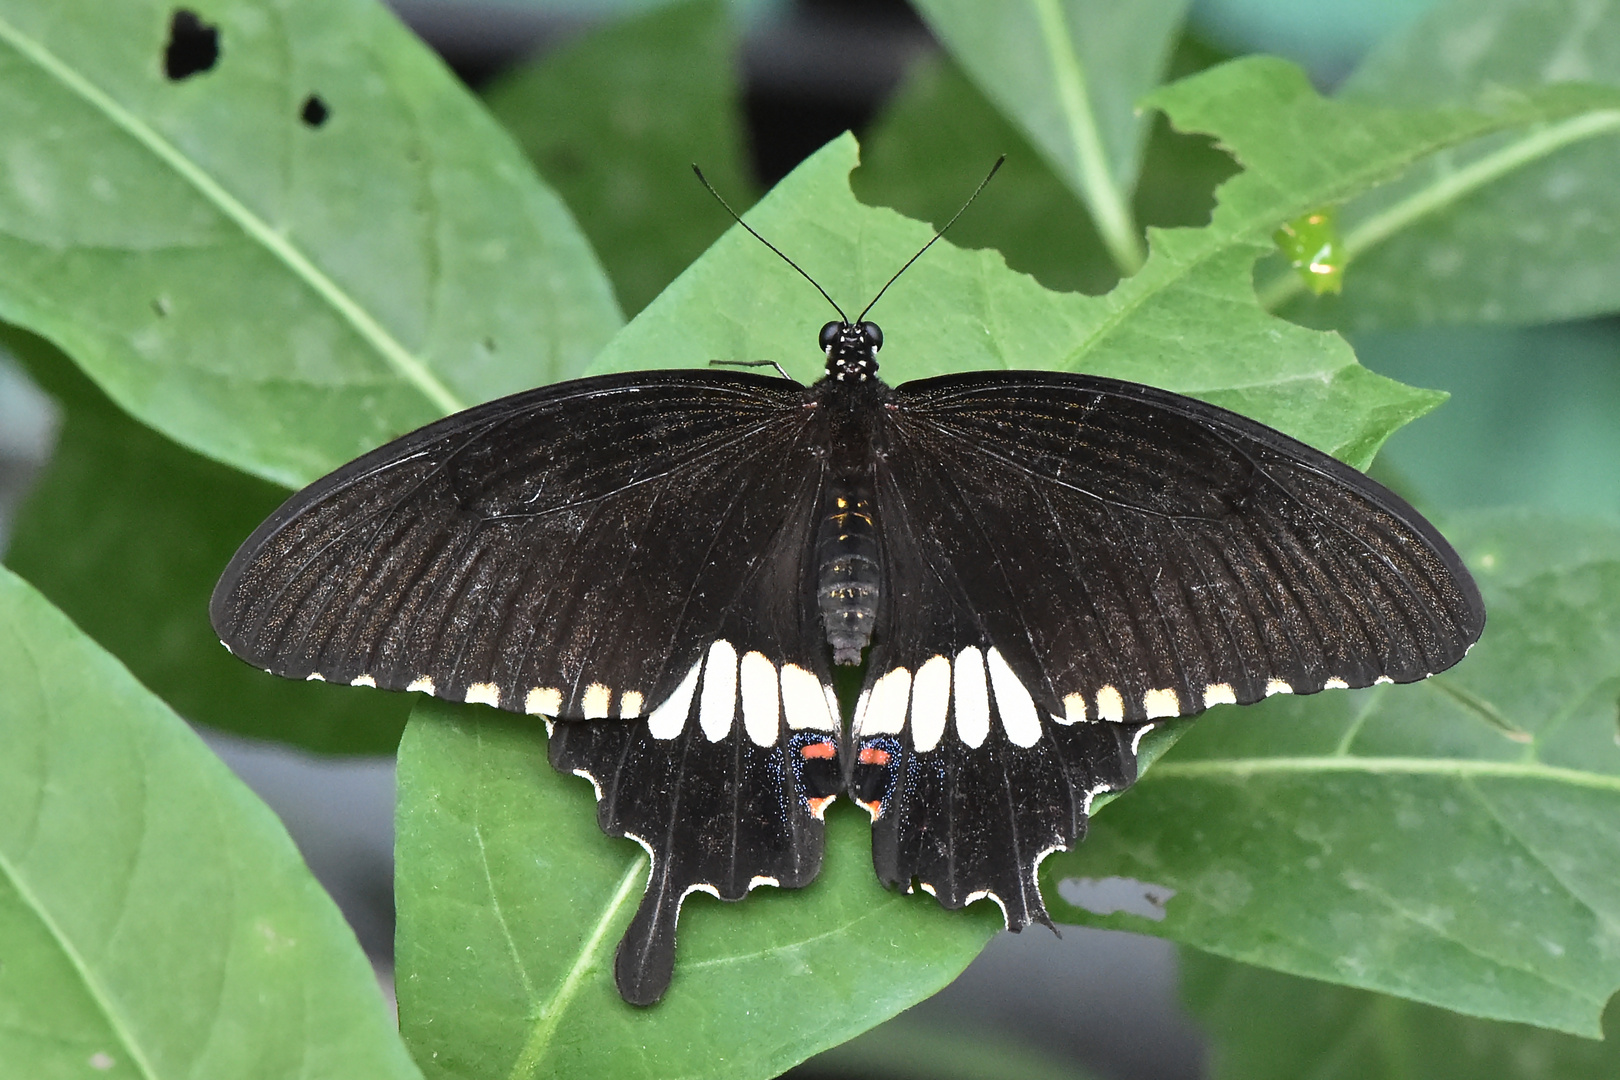 Kleiner Mormon - Papilio polytes